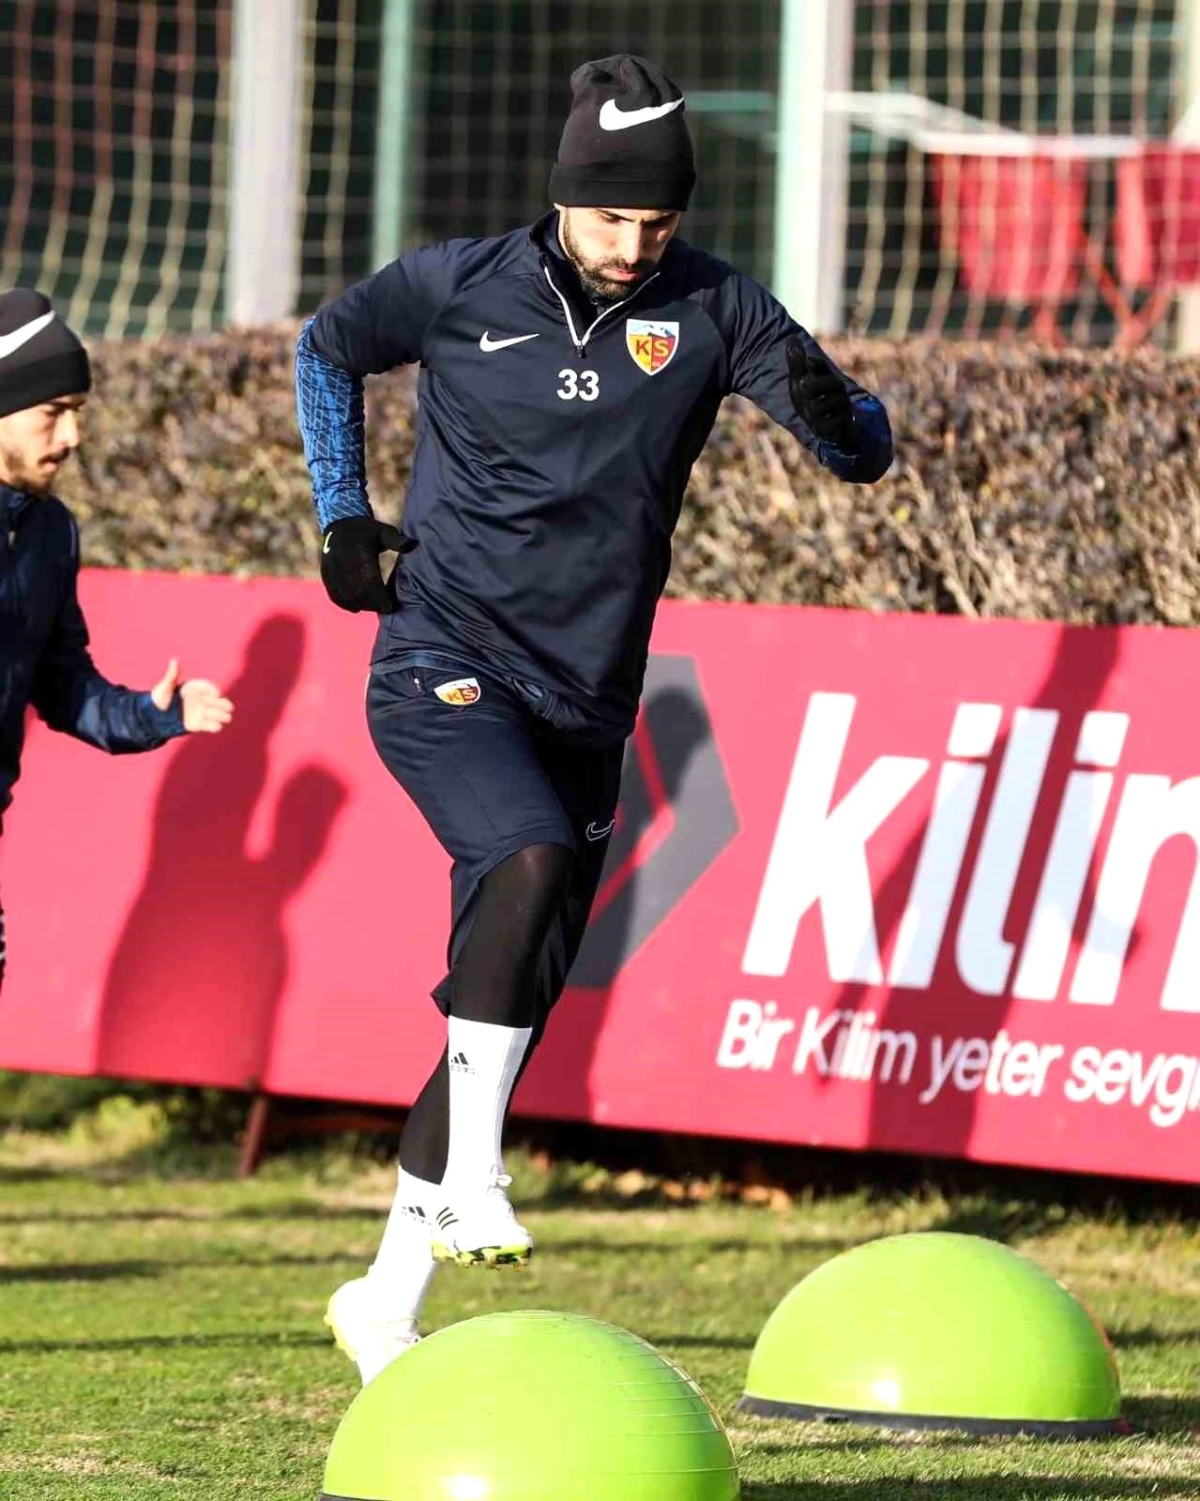 Kayserispor, Konyaspor maçı hazırlıklarını tamamladı